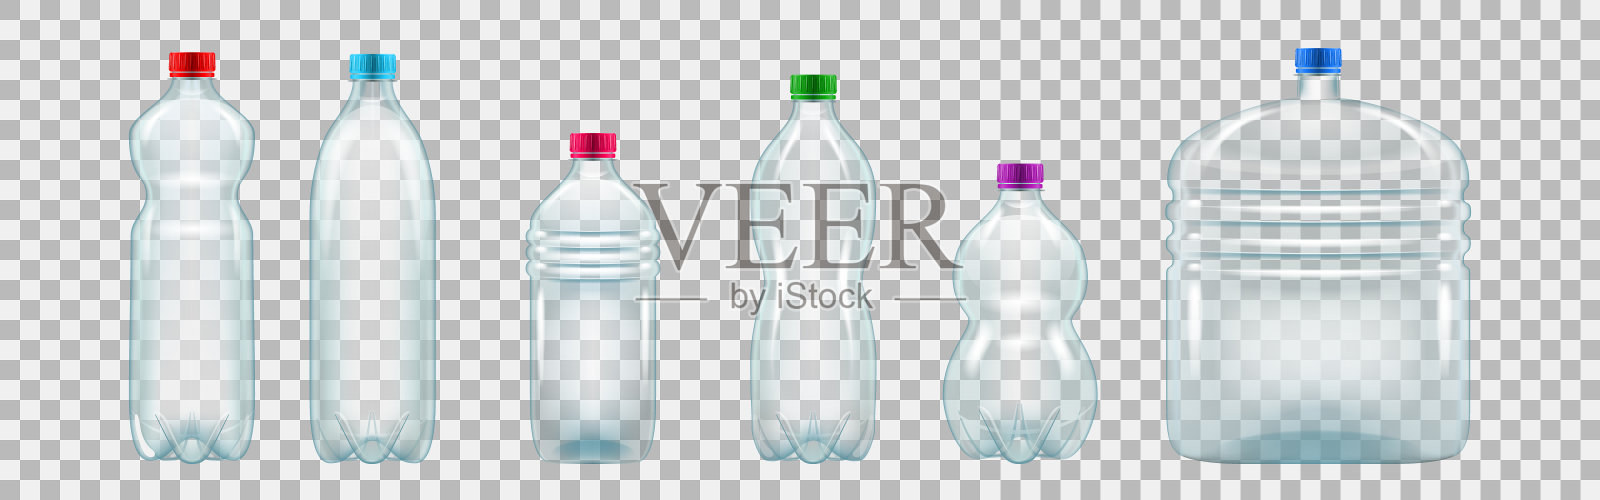 一套逼真的塑料瓶的各种形状和大小插画图片素材